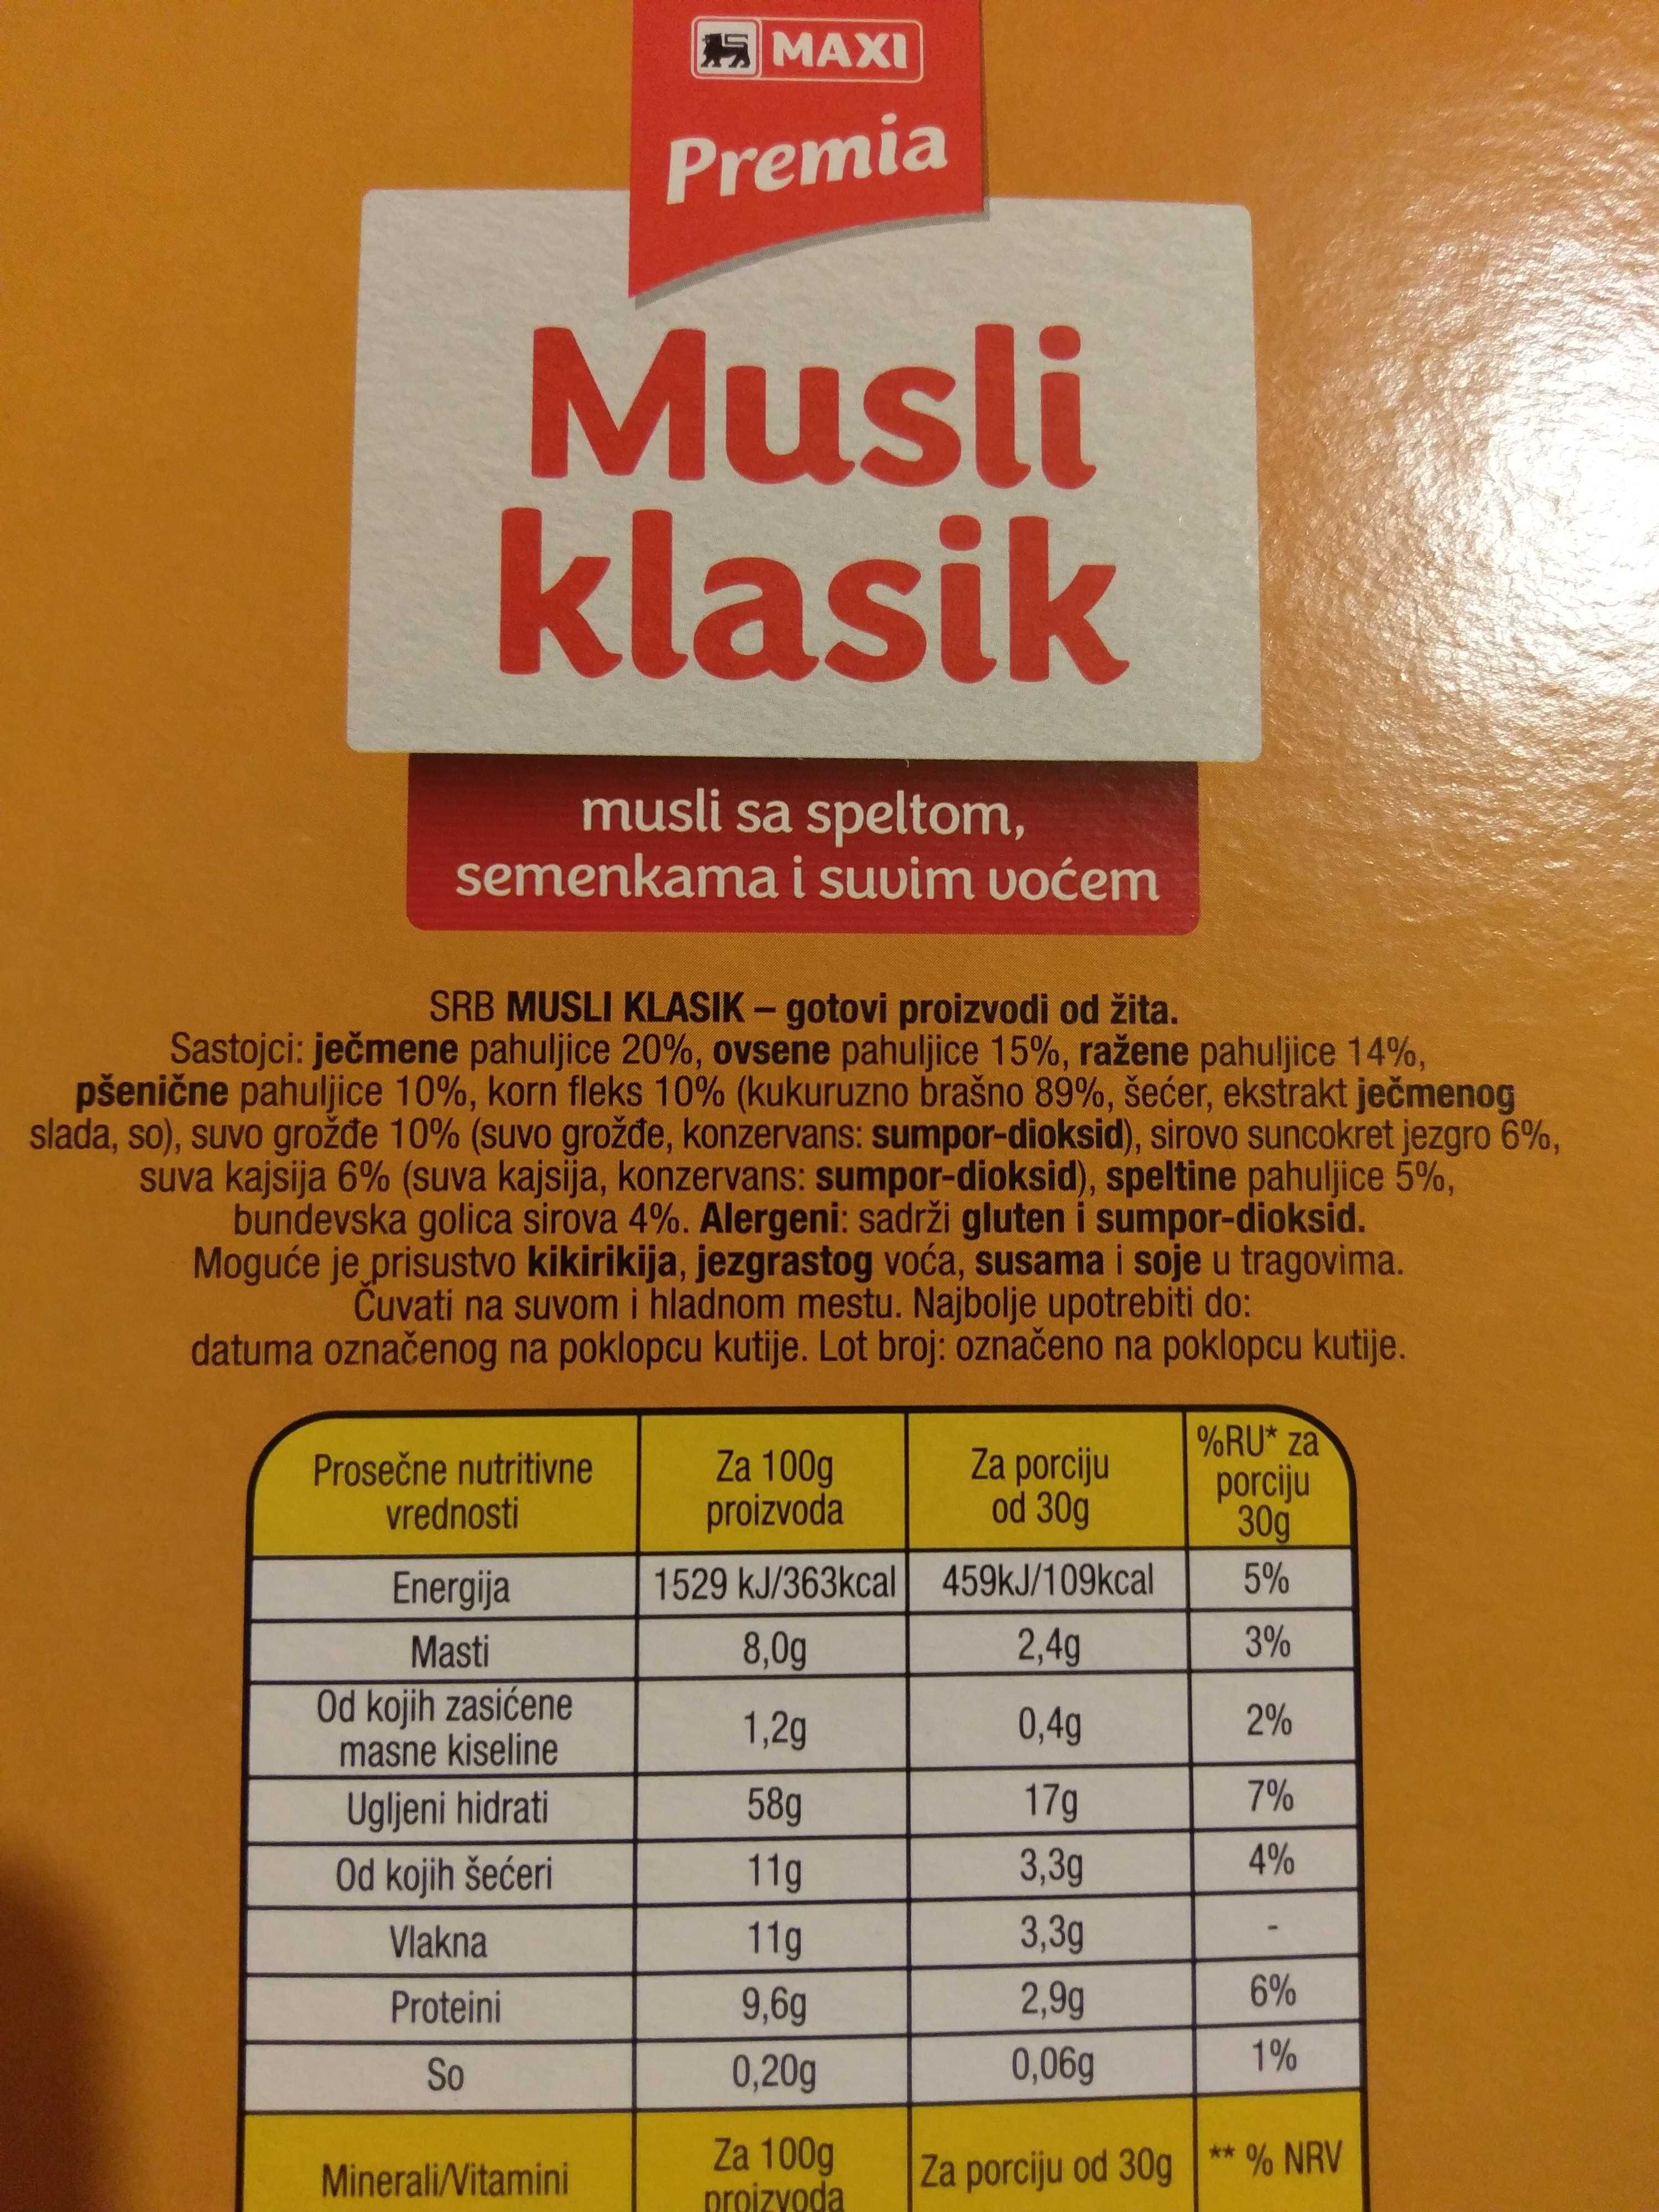 Musli klasik 250g - Ingredients